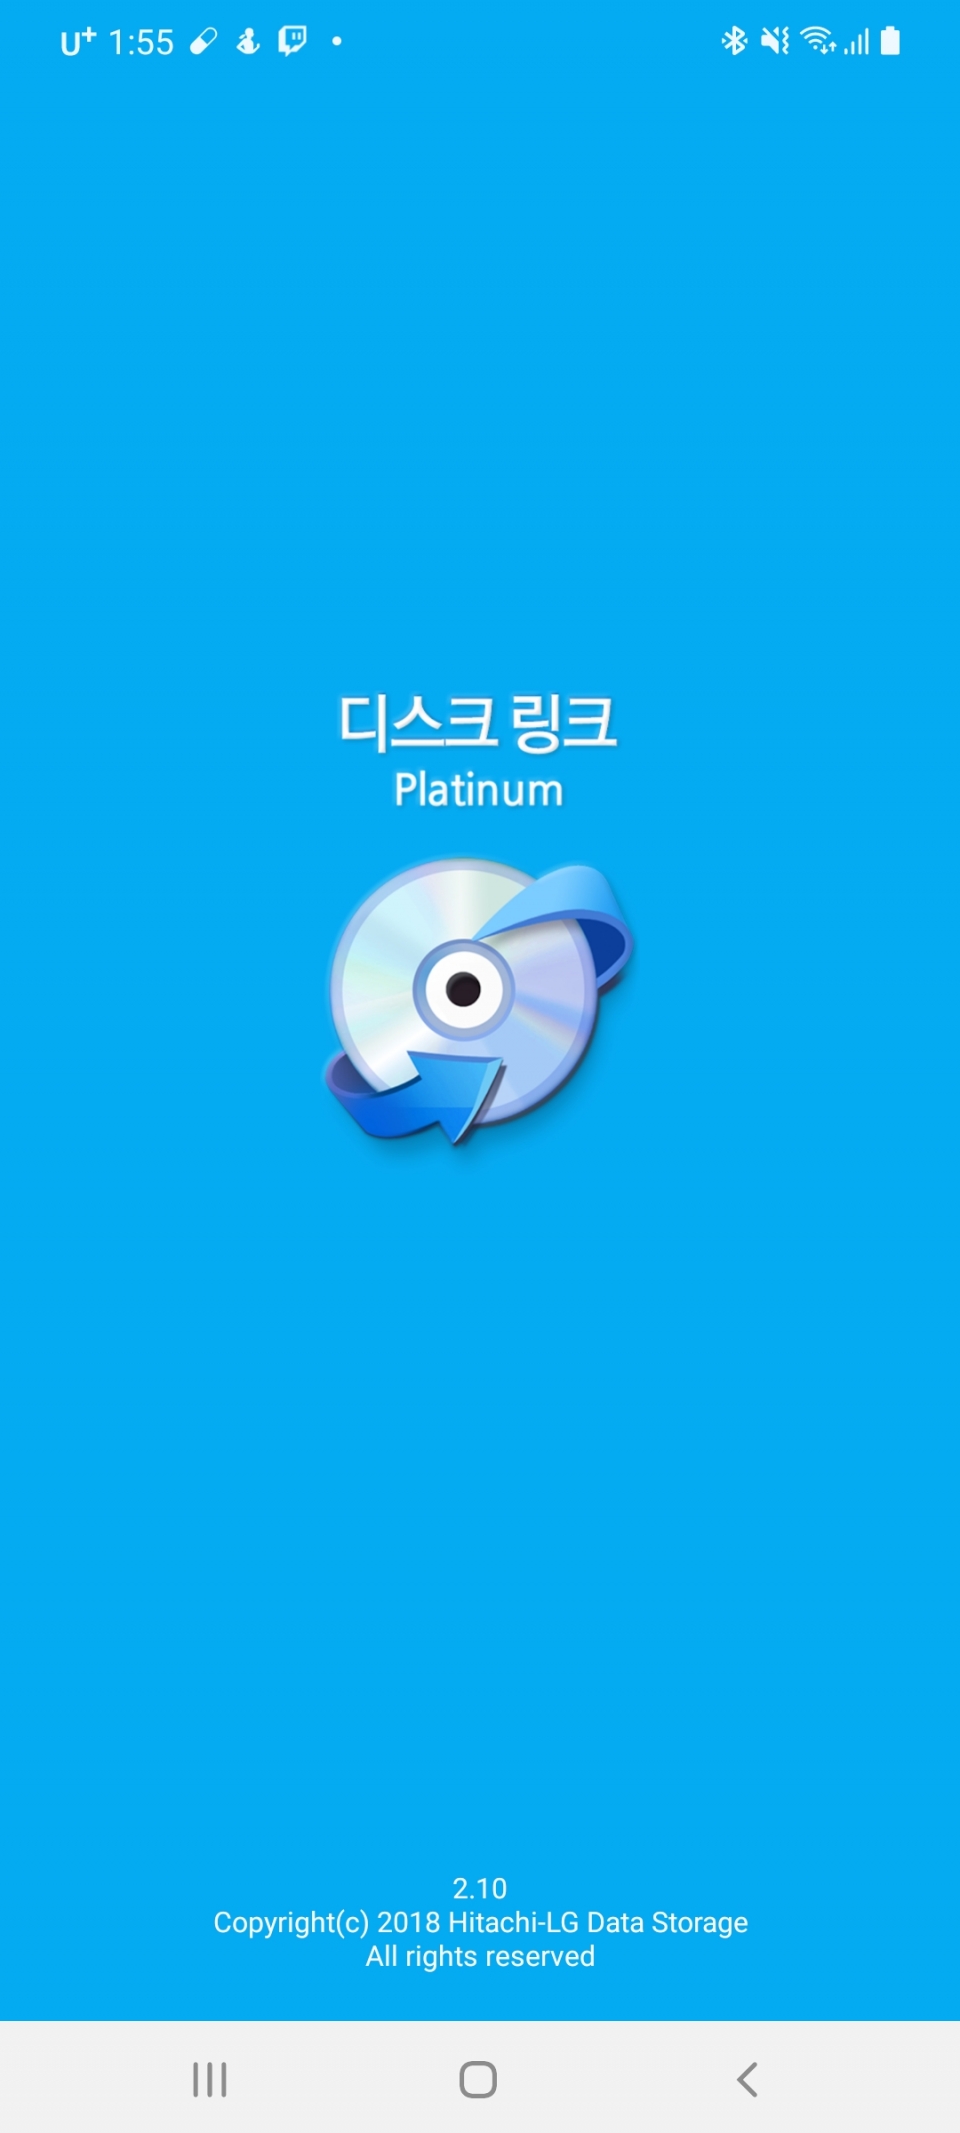 디스크 링크 Platinum 앱을 실행한 다음 '오디오 재생'을 선택한다.